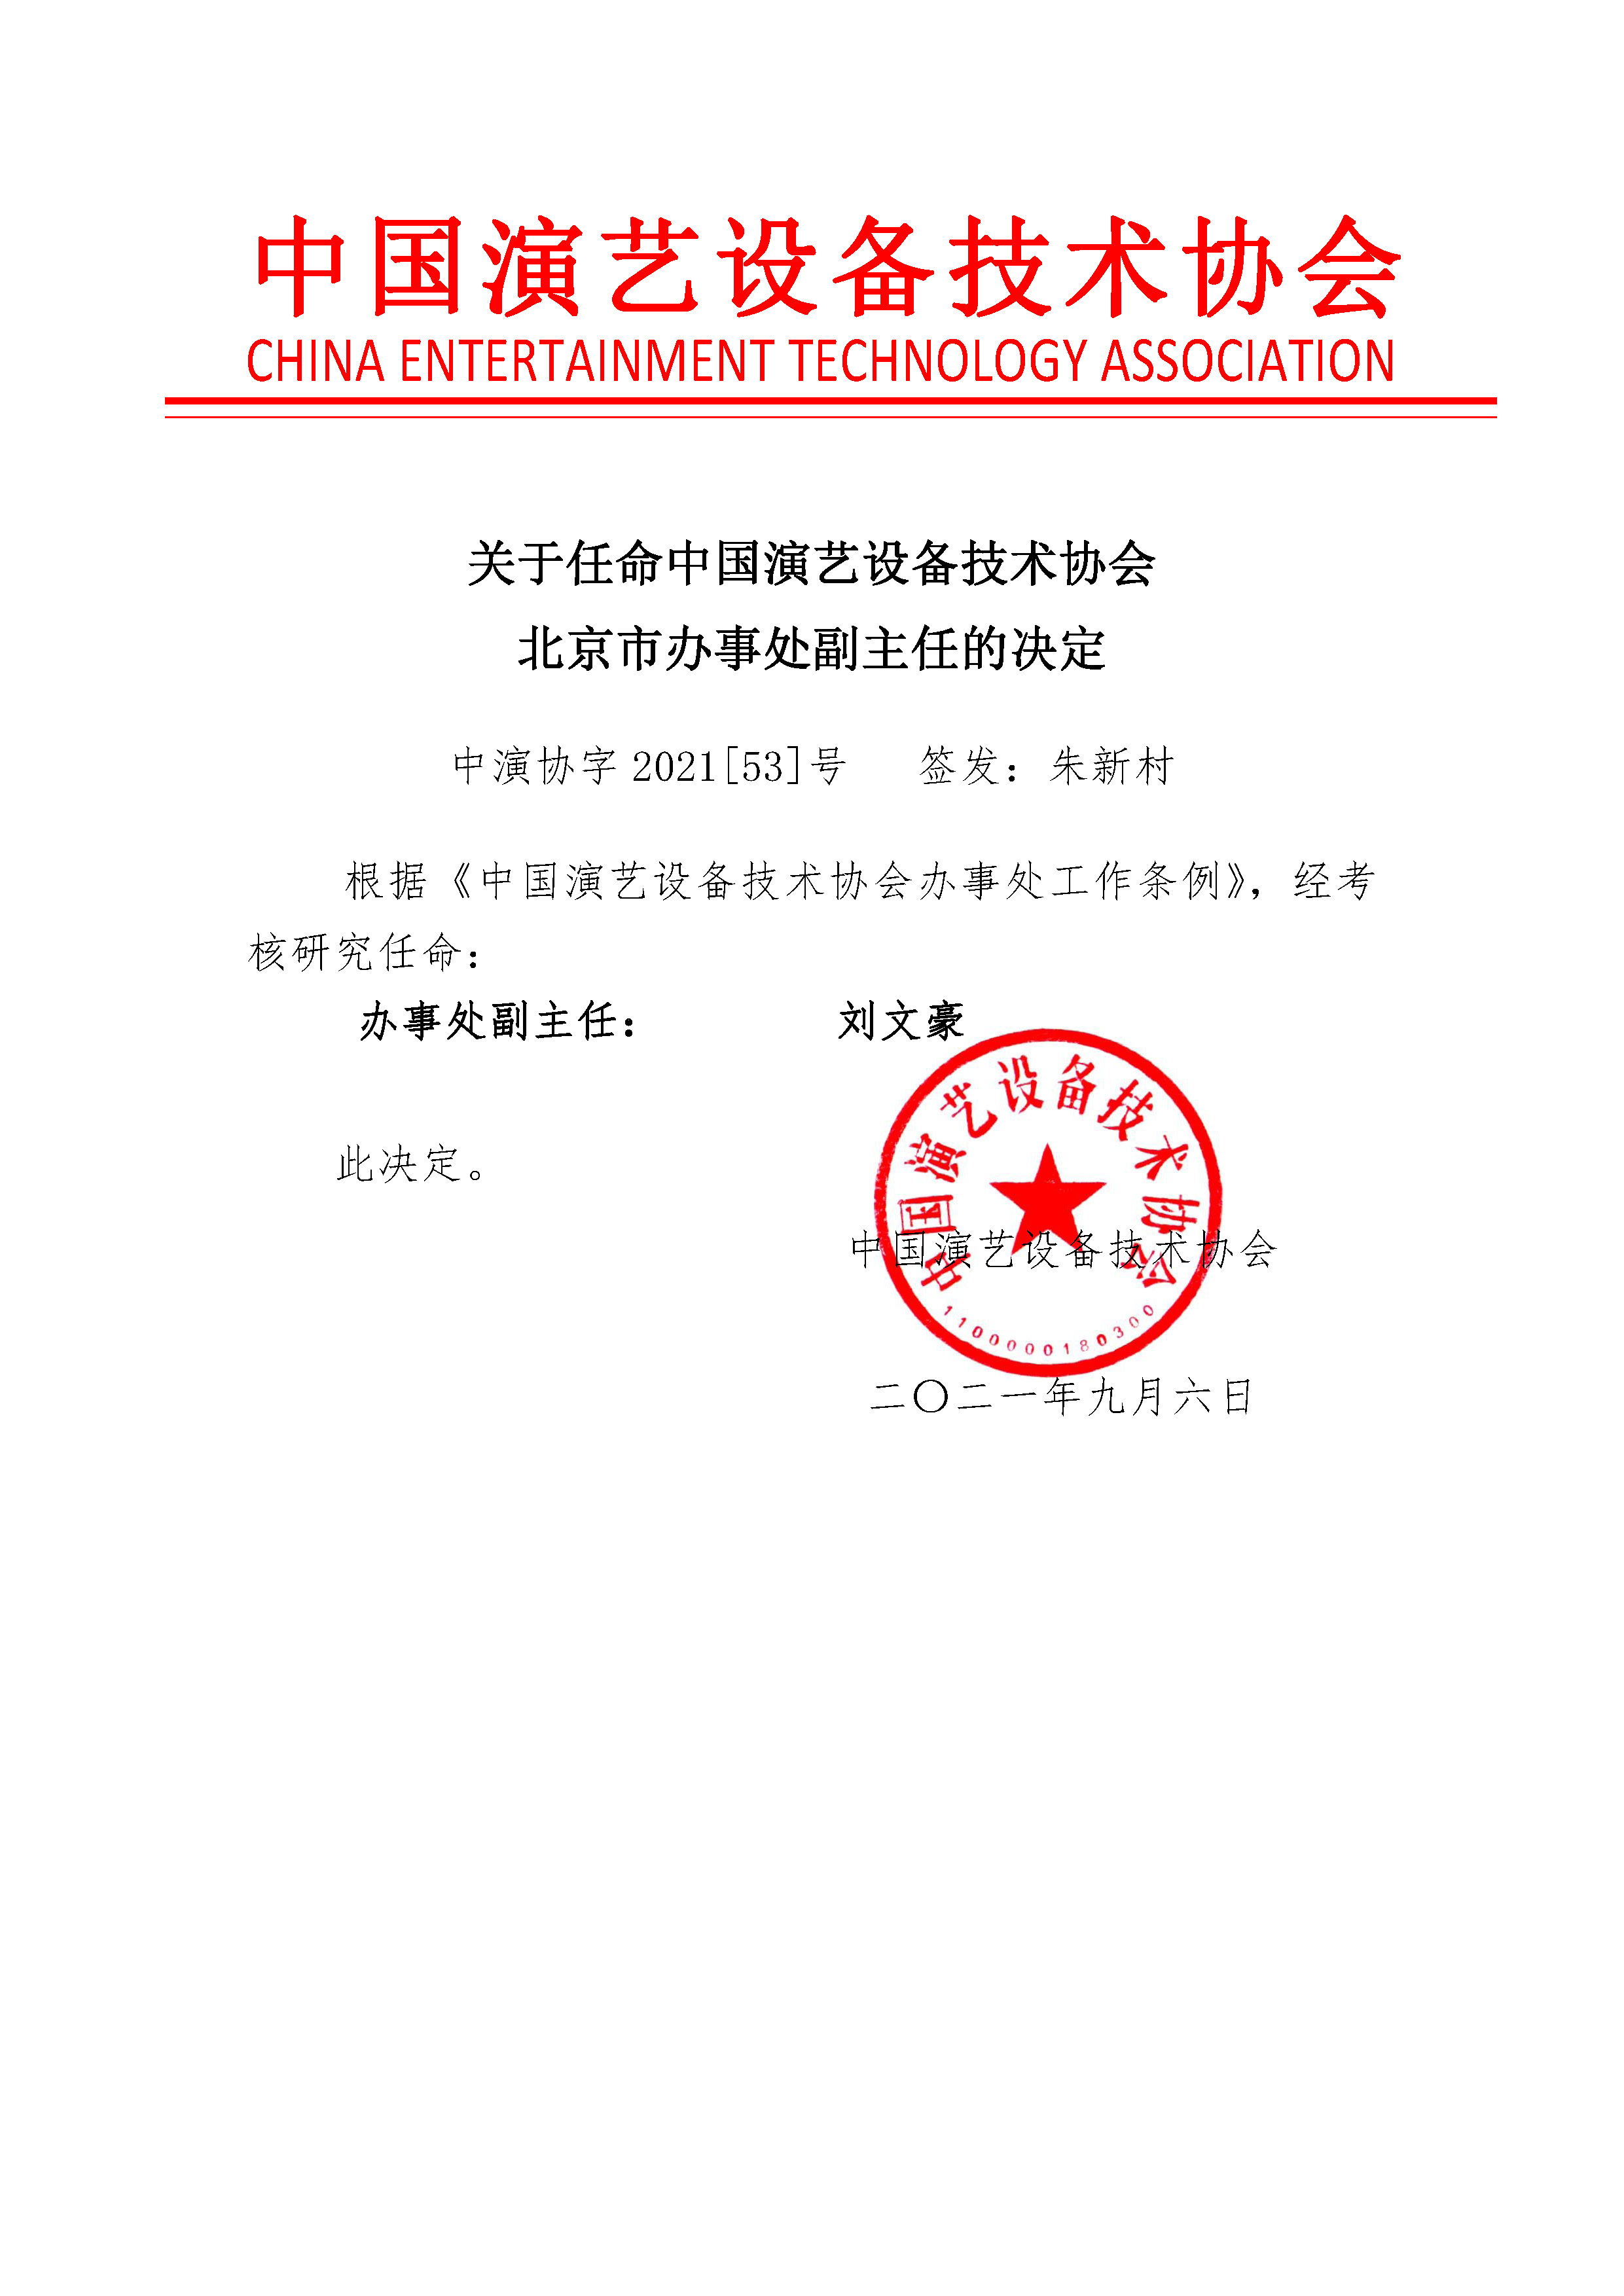 北京市办事处副主任的决定 2021[ 53 ](1).jpg